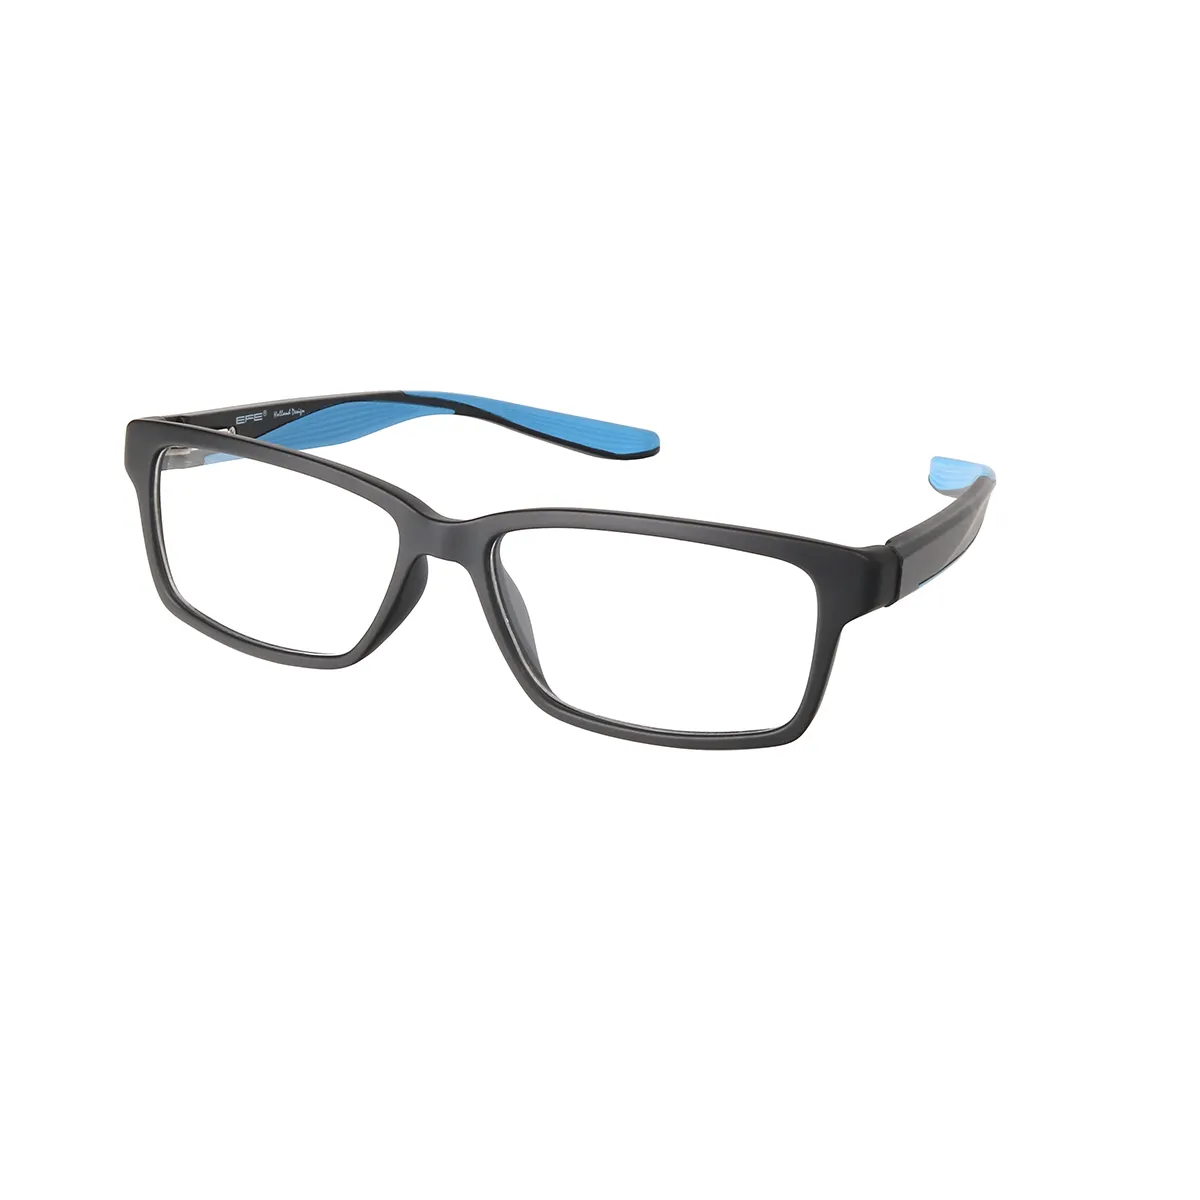 Sports Rectangle Black-Blue Glasses for Men